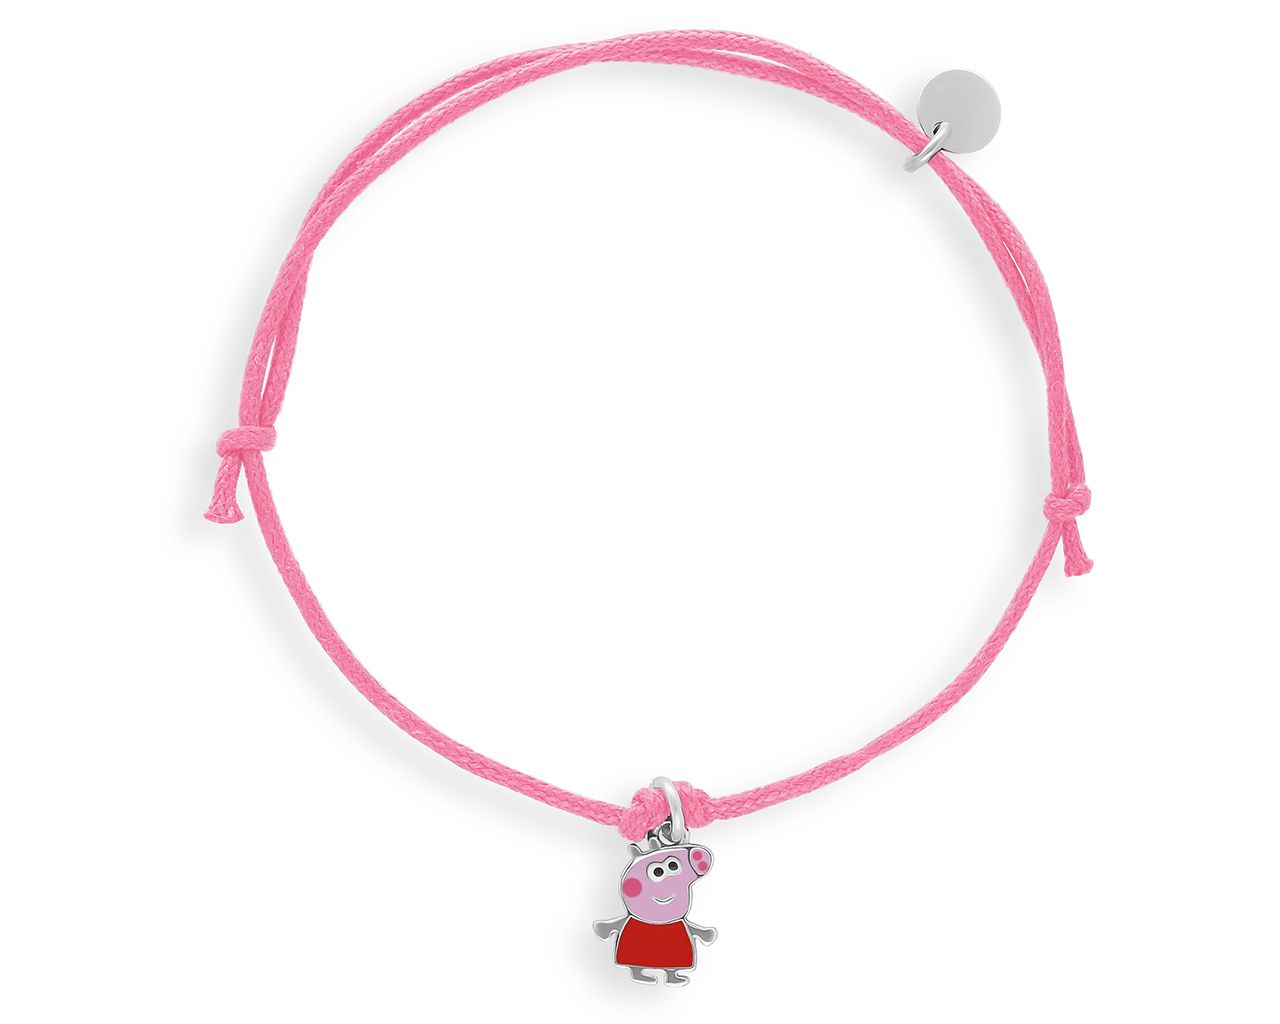 Bransoletka dla dziecka na różowym sznurku